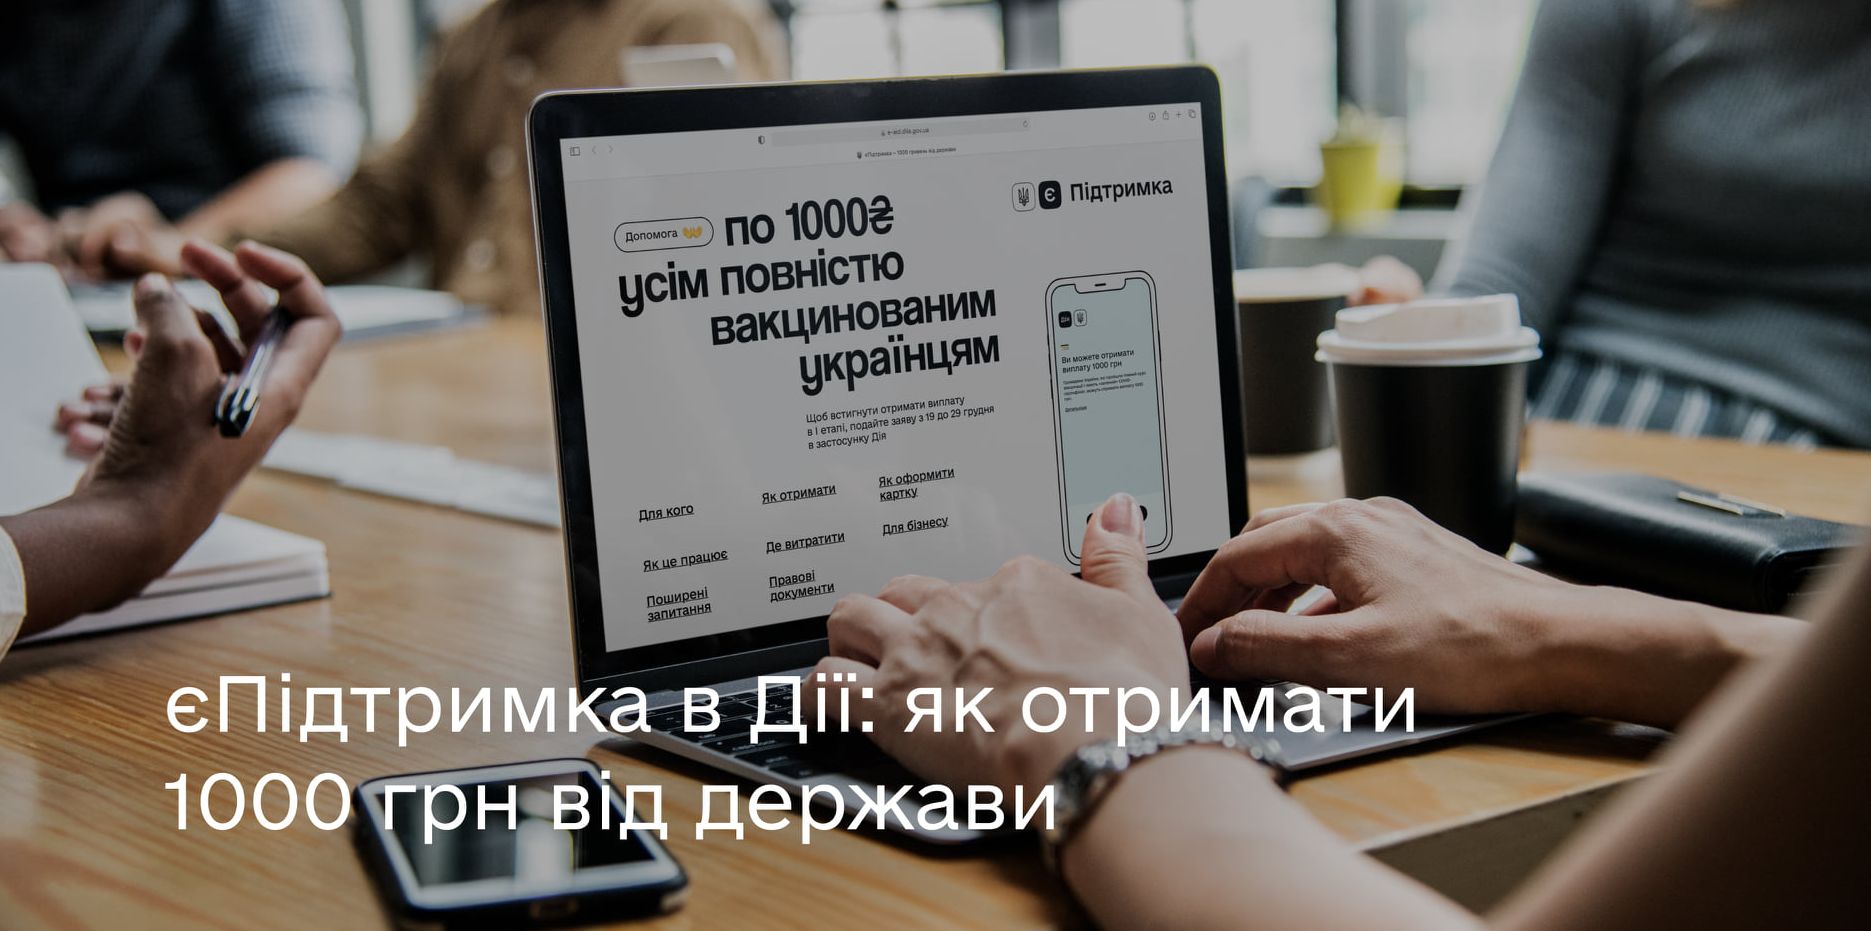 Виплату може отримати громадянин України, який досяг 18 років і має в застосунку Дія "зелений" COVID-сертифікат вакцинації.